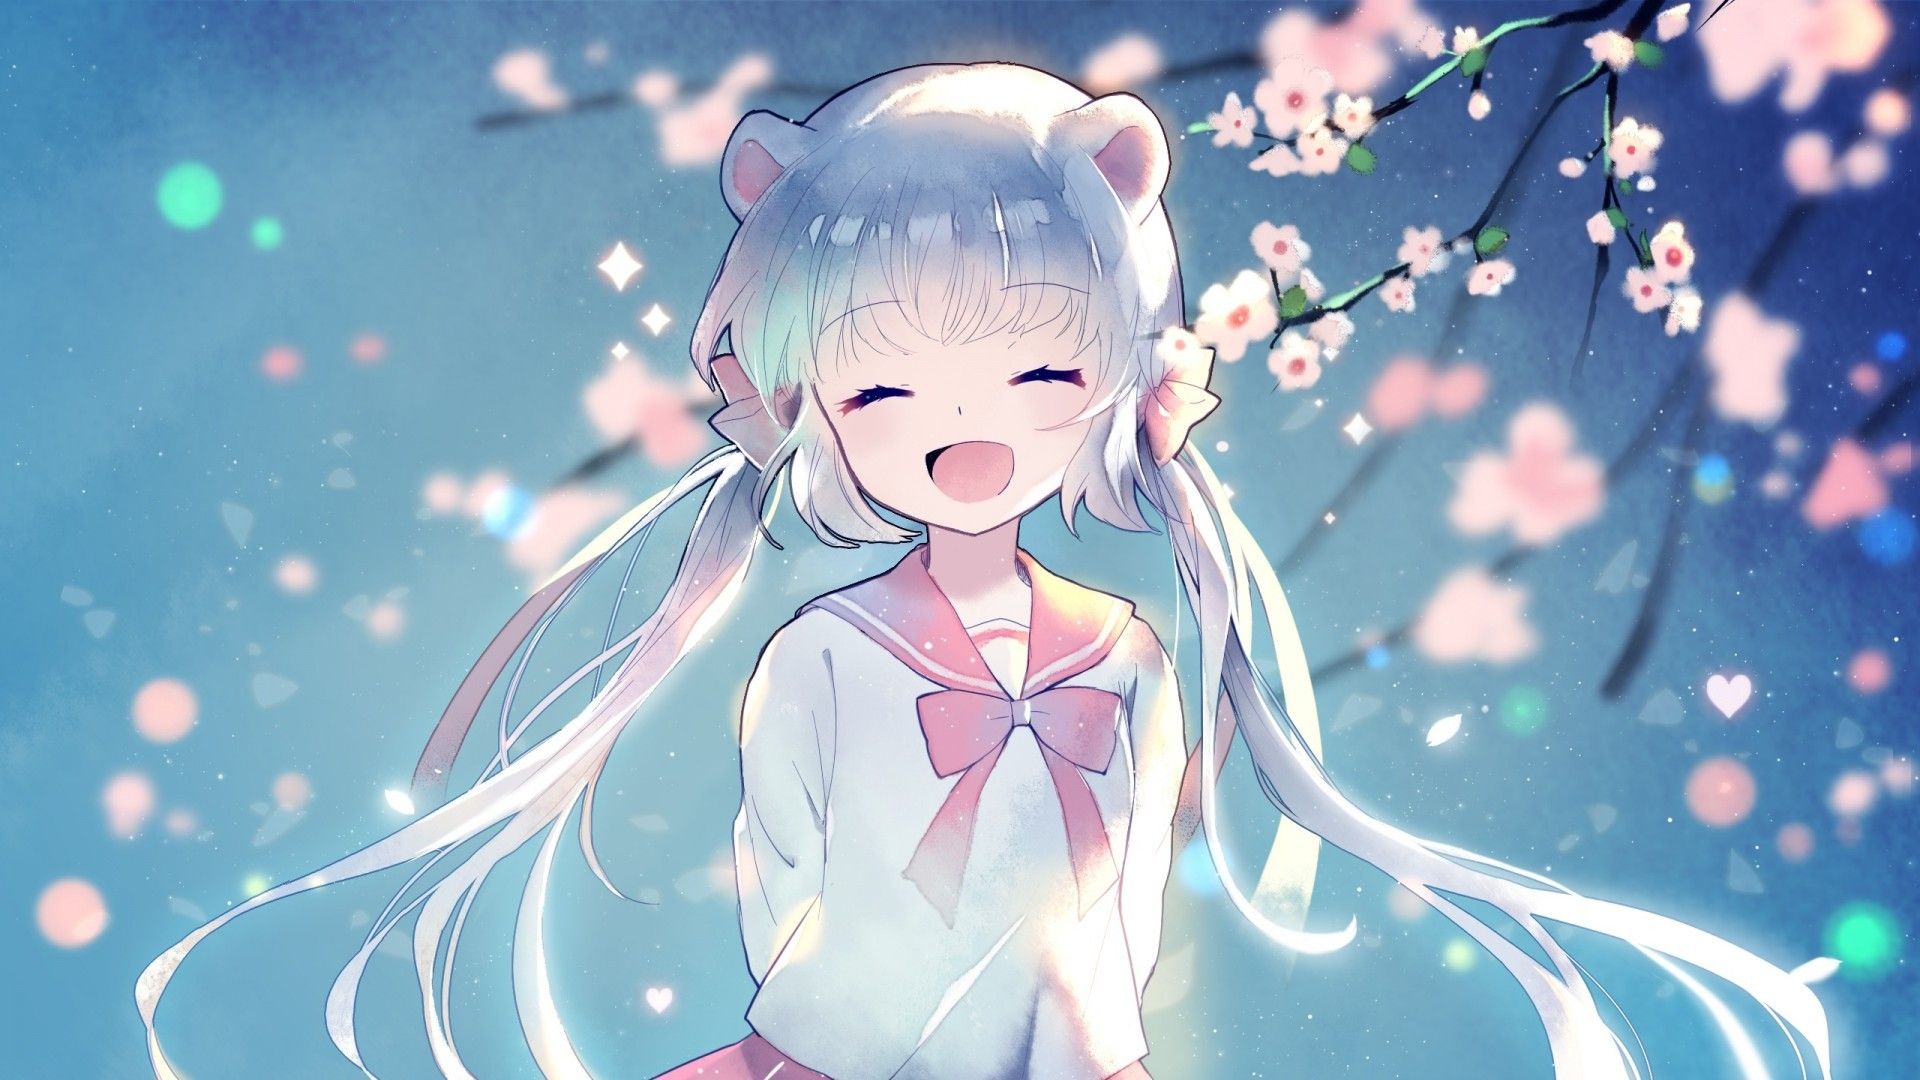 Happy Anime Girl Wallpapers - Top Những Hình Ảnh Đẹp